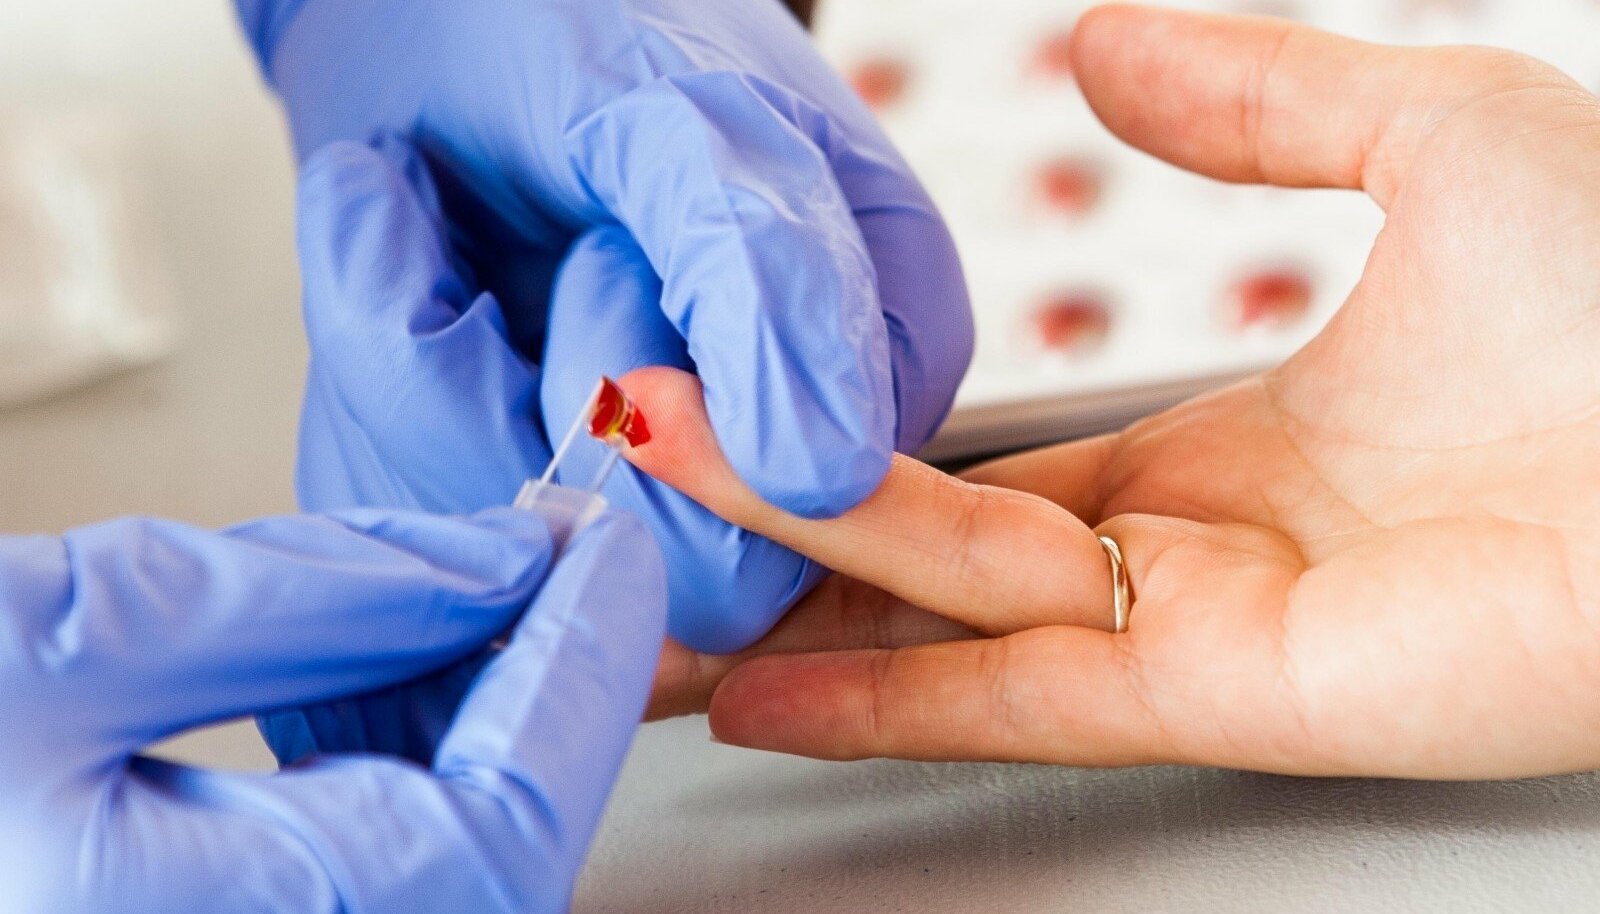 Почему кровь на анализ берут зачастую из безымянного пальца? | Пикабу